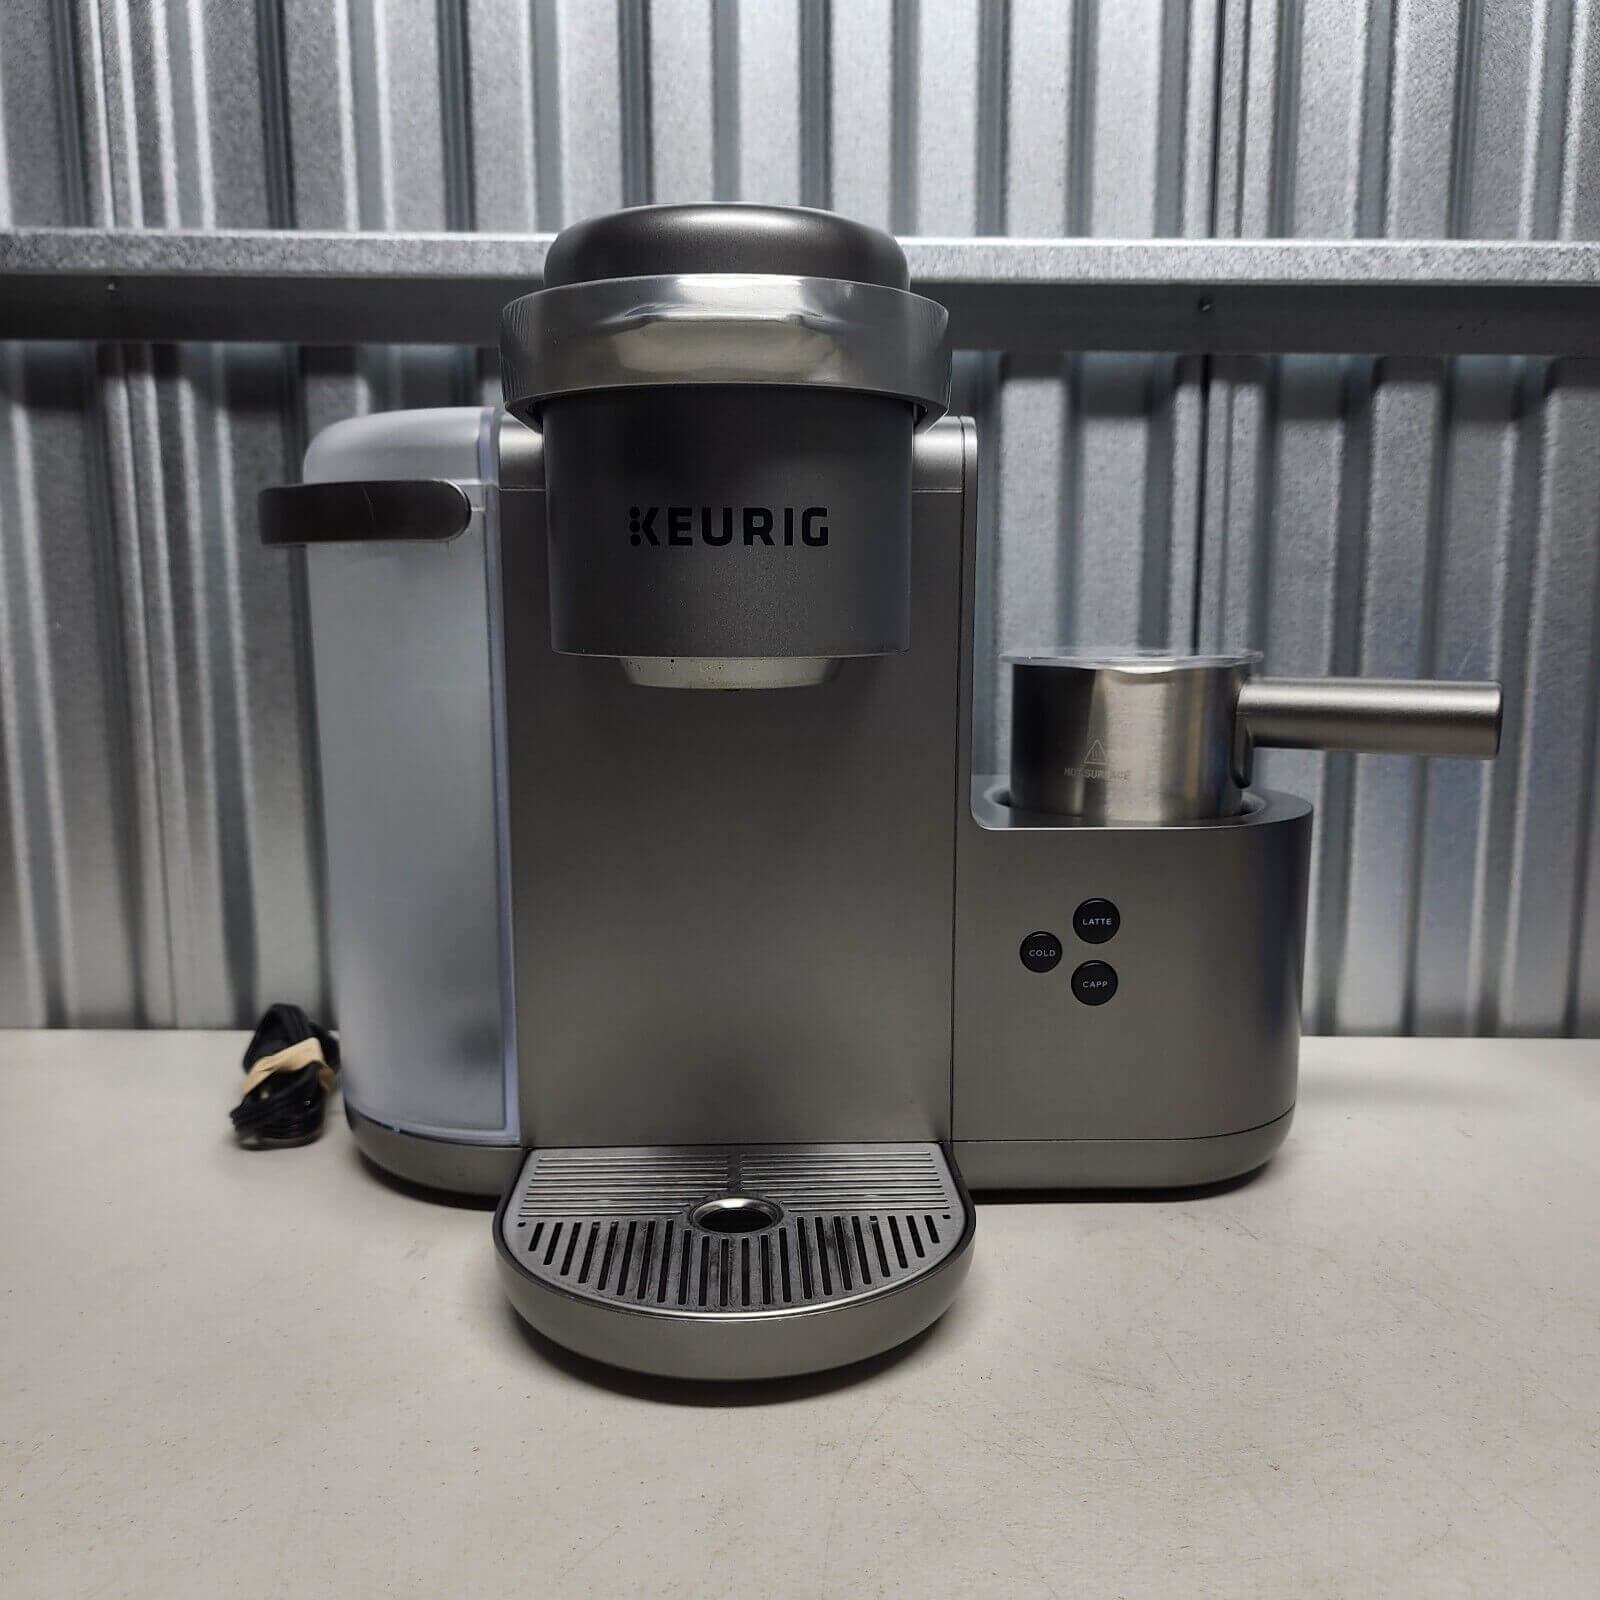 Keurig K-Cafe Special Edition - Best Keurig Coffee Machine